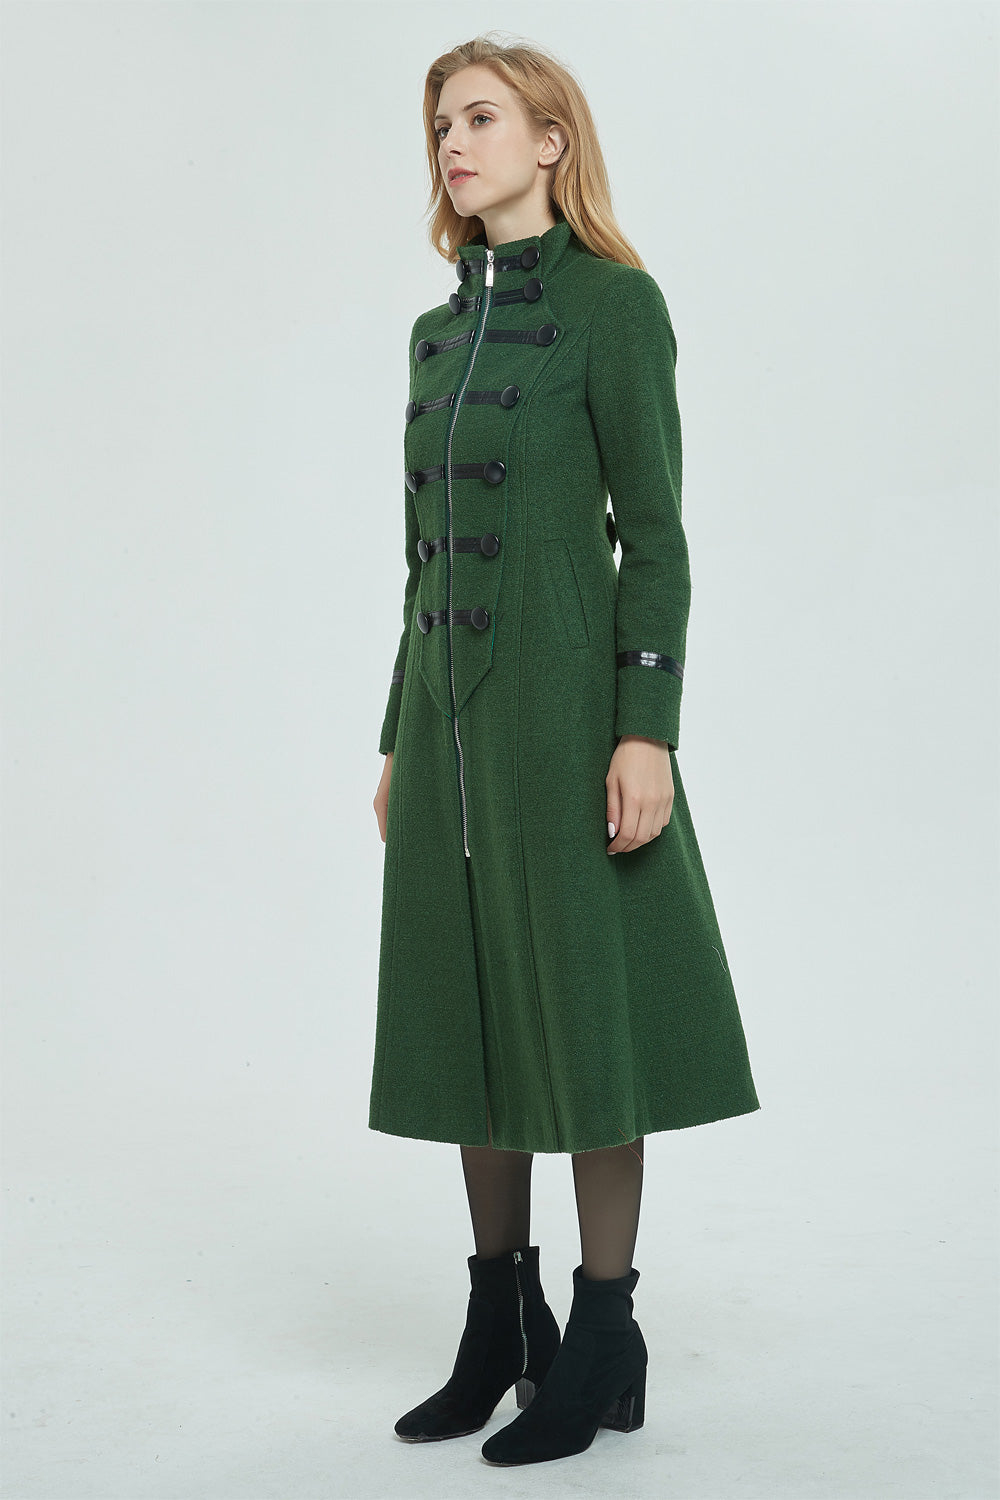 Wool Coat, Green Long Wool Coat, Warm Winter Coat Women, Relaxed Fit Coat,  Oversized Wool Coat, Wool Jacket, Custom Ylistyle Coat C1763 